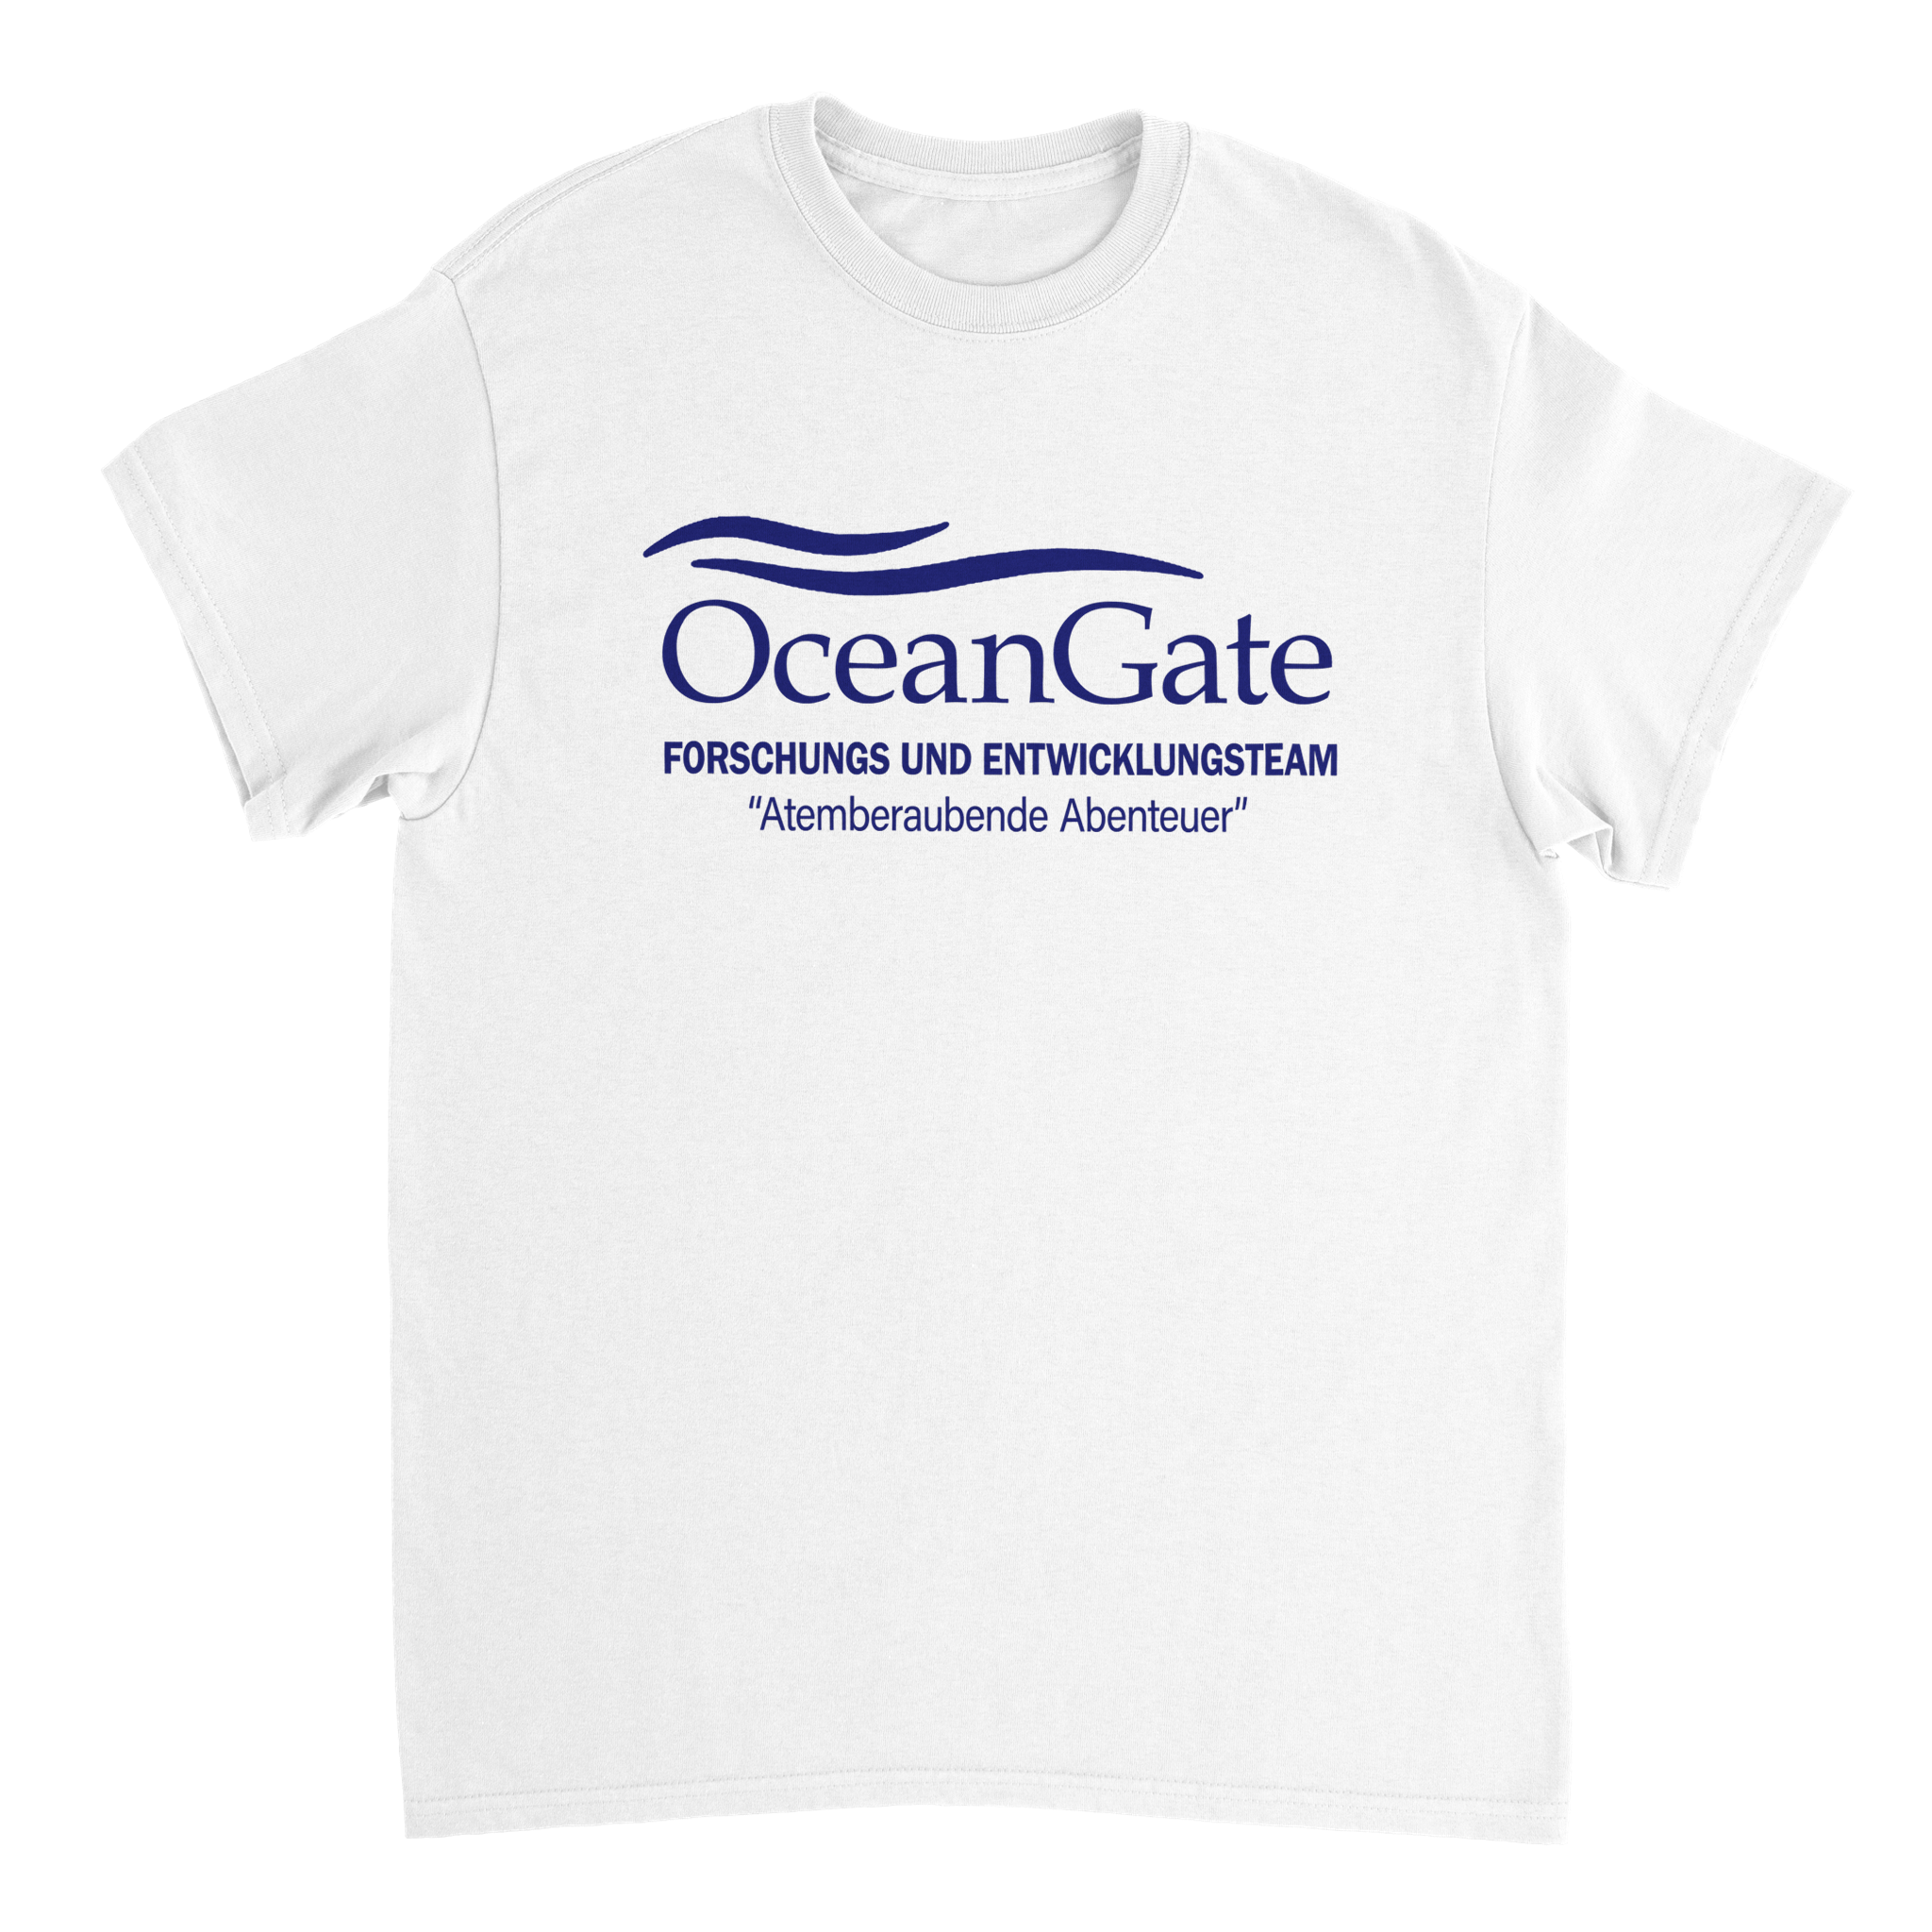 OceanGate Forschungs & Entwicklungsteam T-Shirt